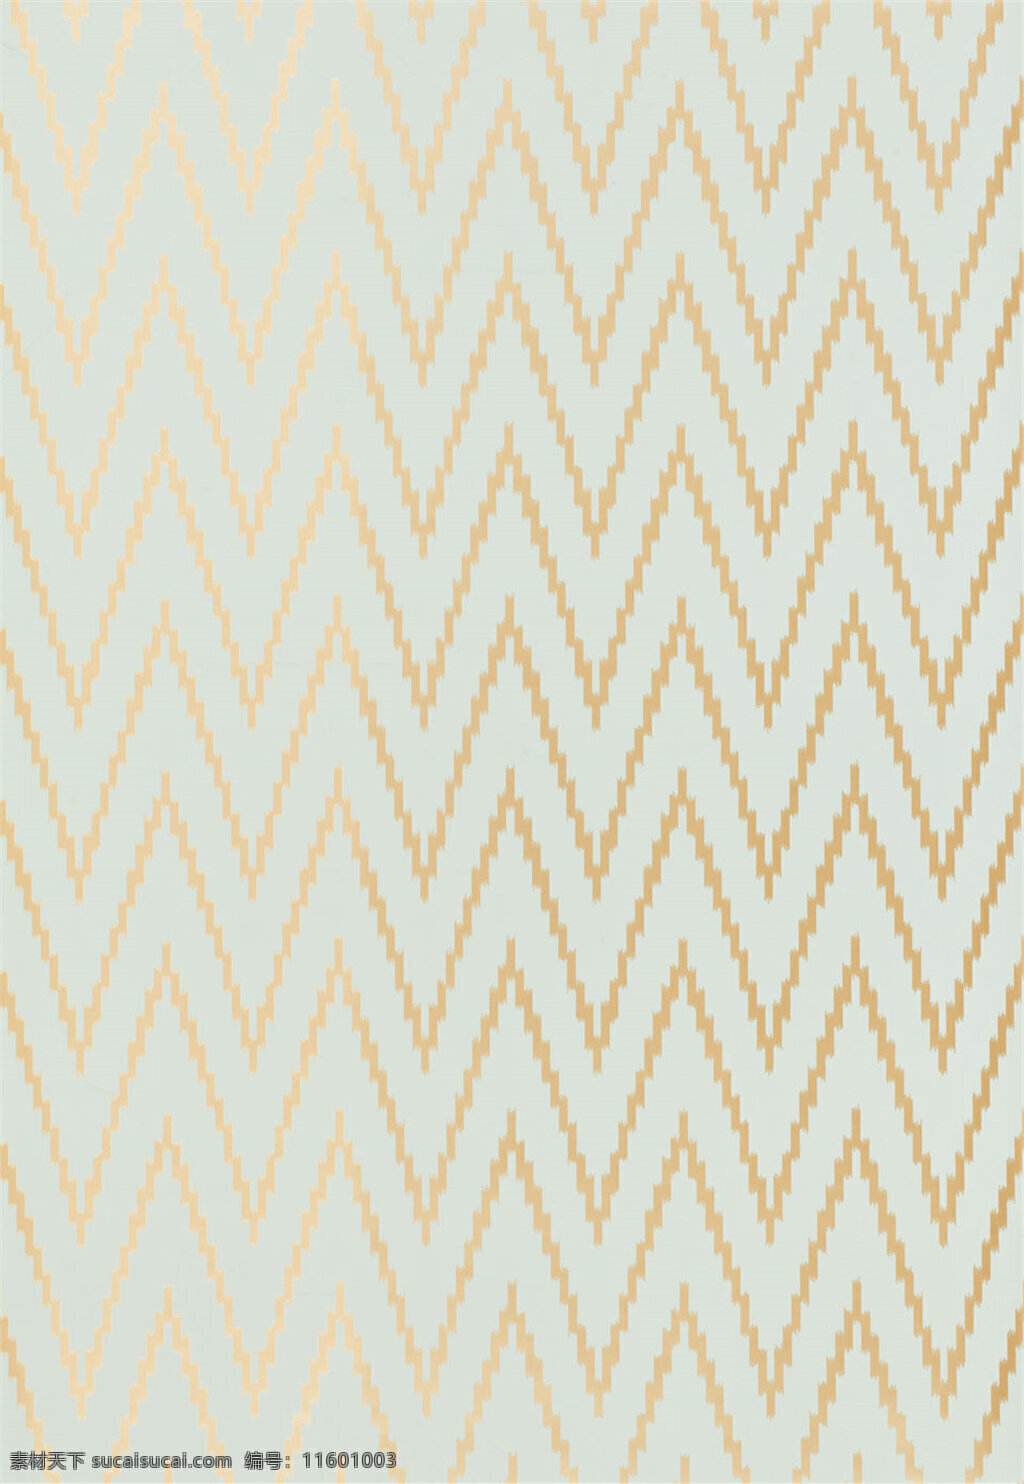 金色 线条 波浪形 布艺 壁纸 中式花纹背景 壁纸素材 无缝壁纸素材 欧式花纹 矢量壁纸 壁纸图片下载 装饰设计 装饰素材 金色线条 布艺壁纸